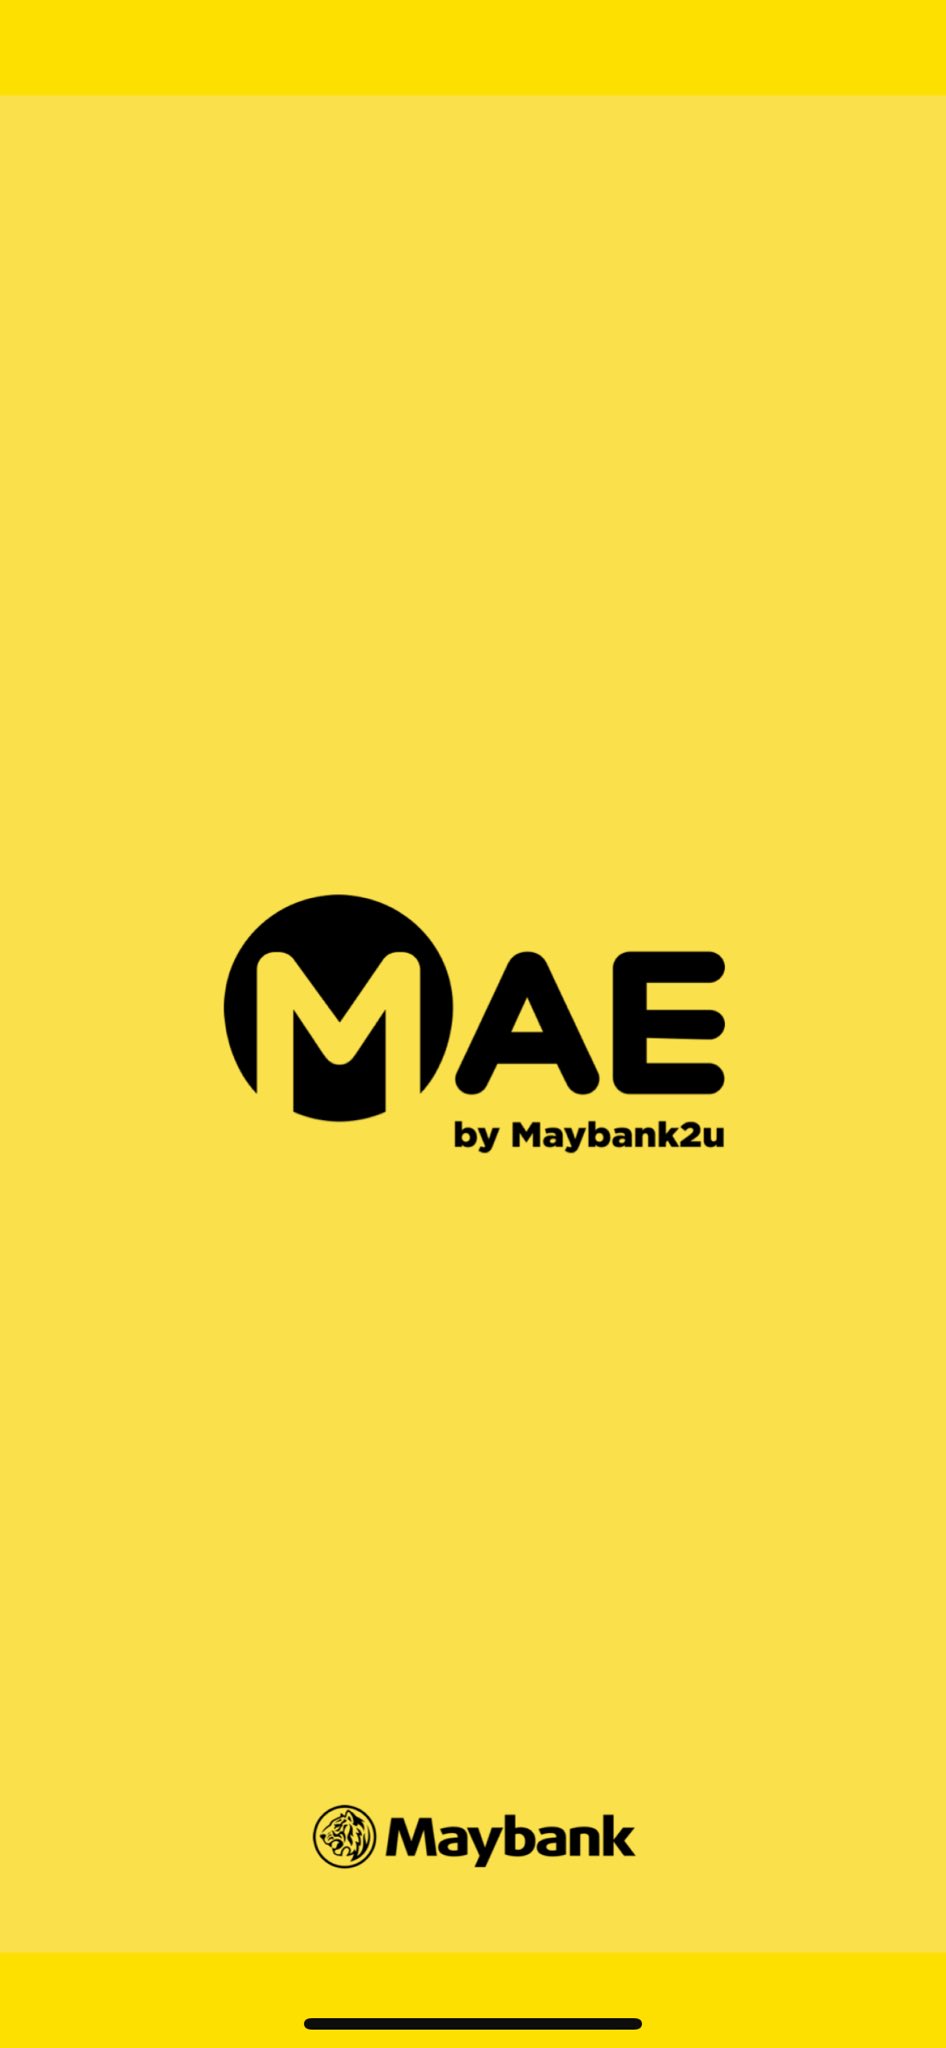 Mae maybank ‎MAE by